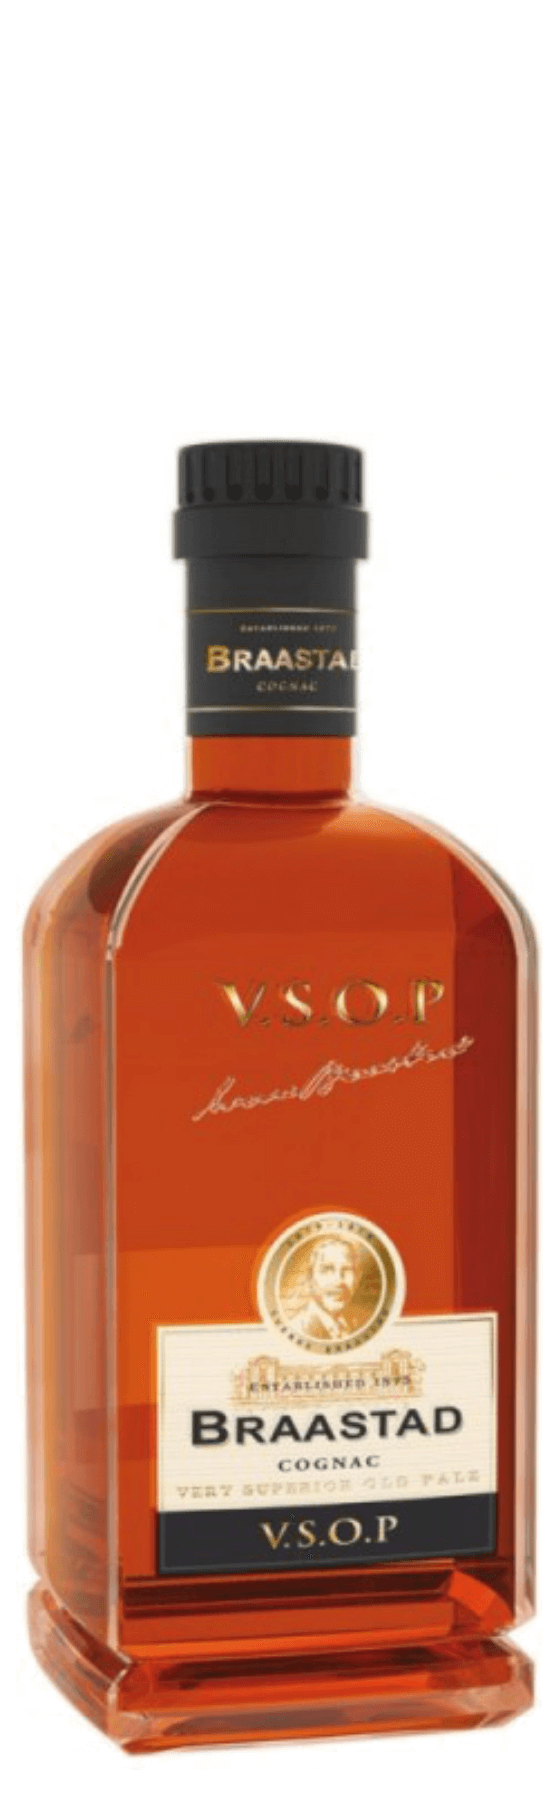 Braastad Cognac V.S.O.P.